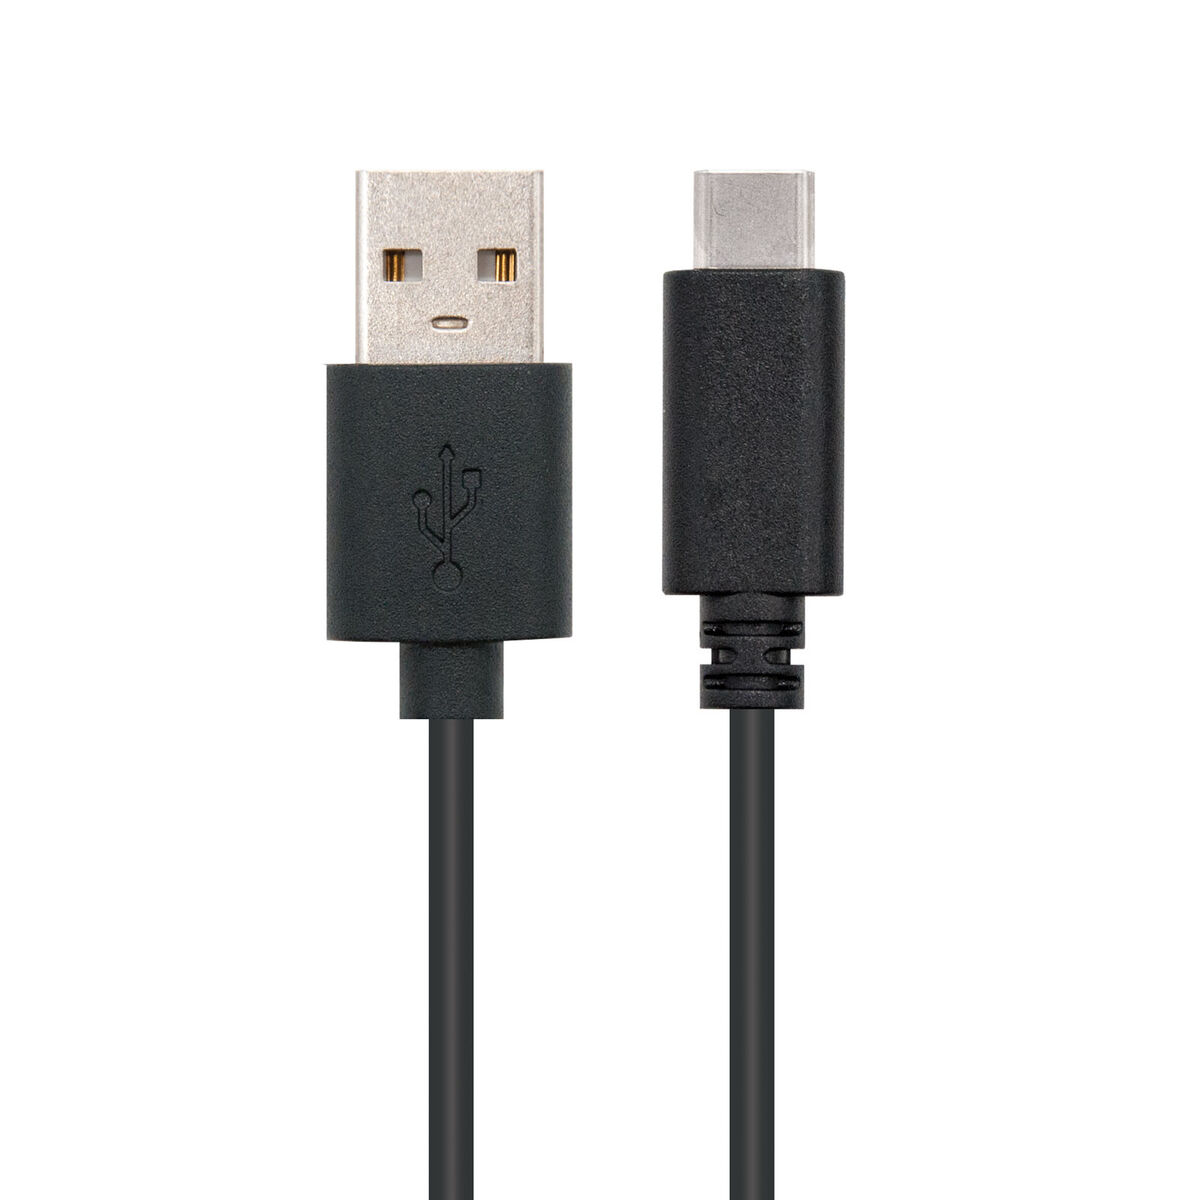 USB A zu USB-C-Kabel NANOCABLE USB 2.0, 1m Schwarz 1 m